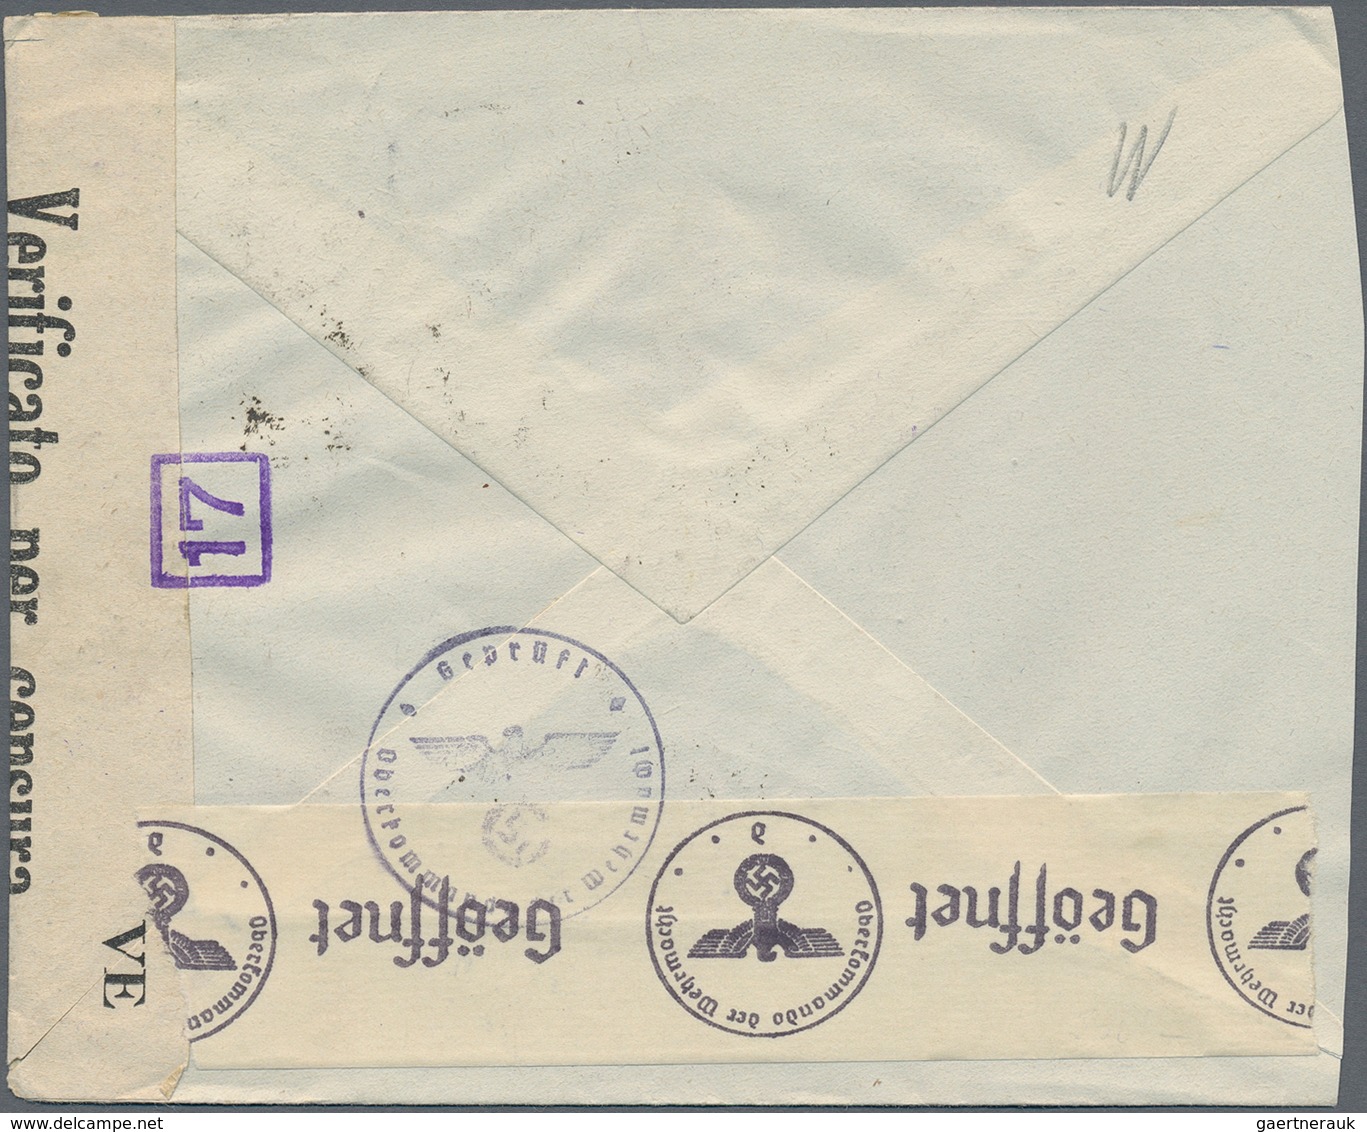 Deutschland: 1897/1945, substanzreicher Briefposten Deutsches Reich mit Nebengebieten und einigen au